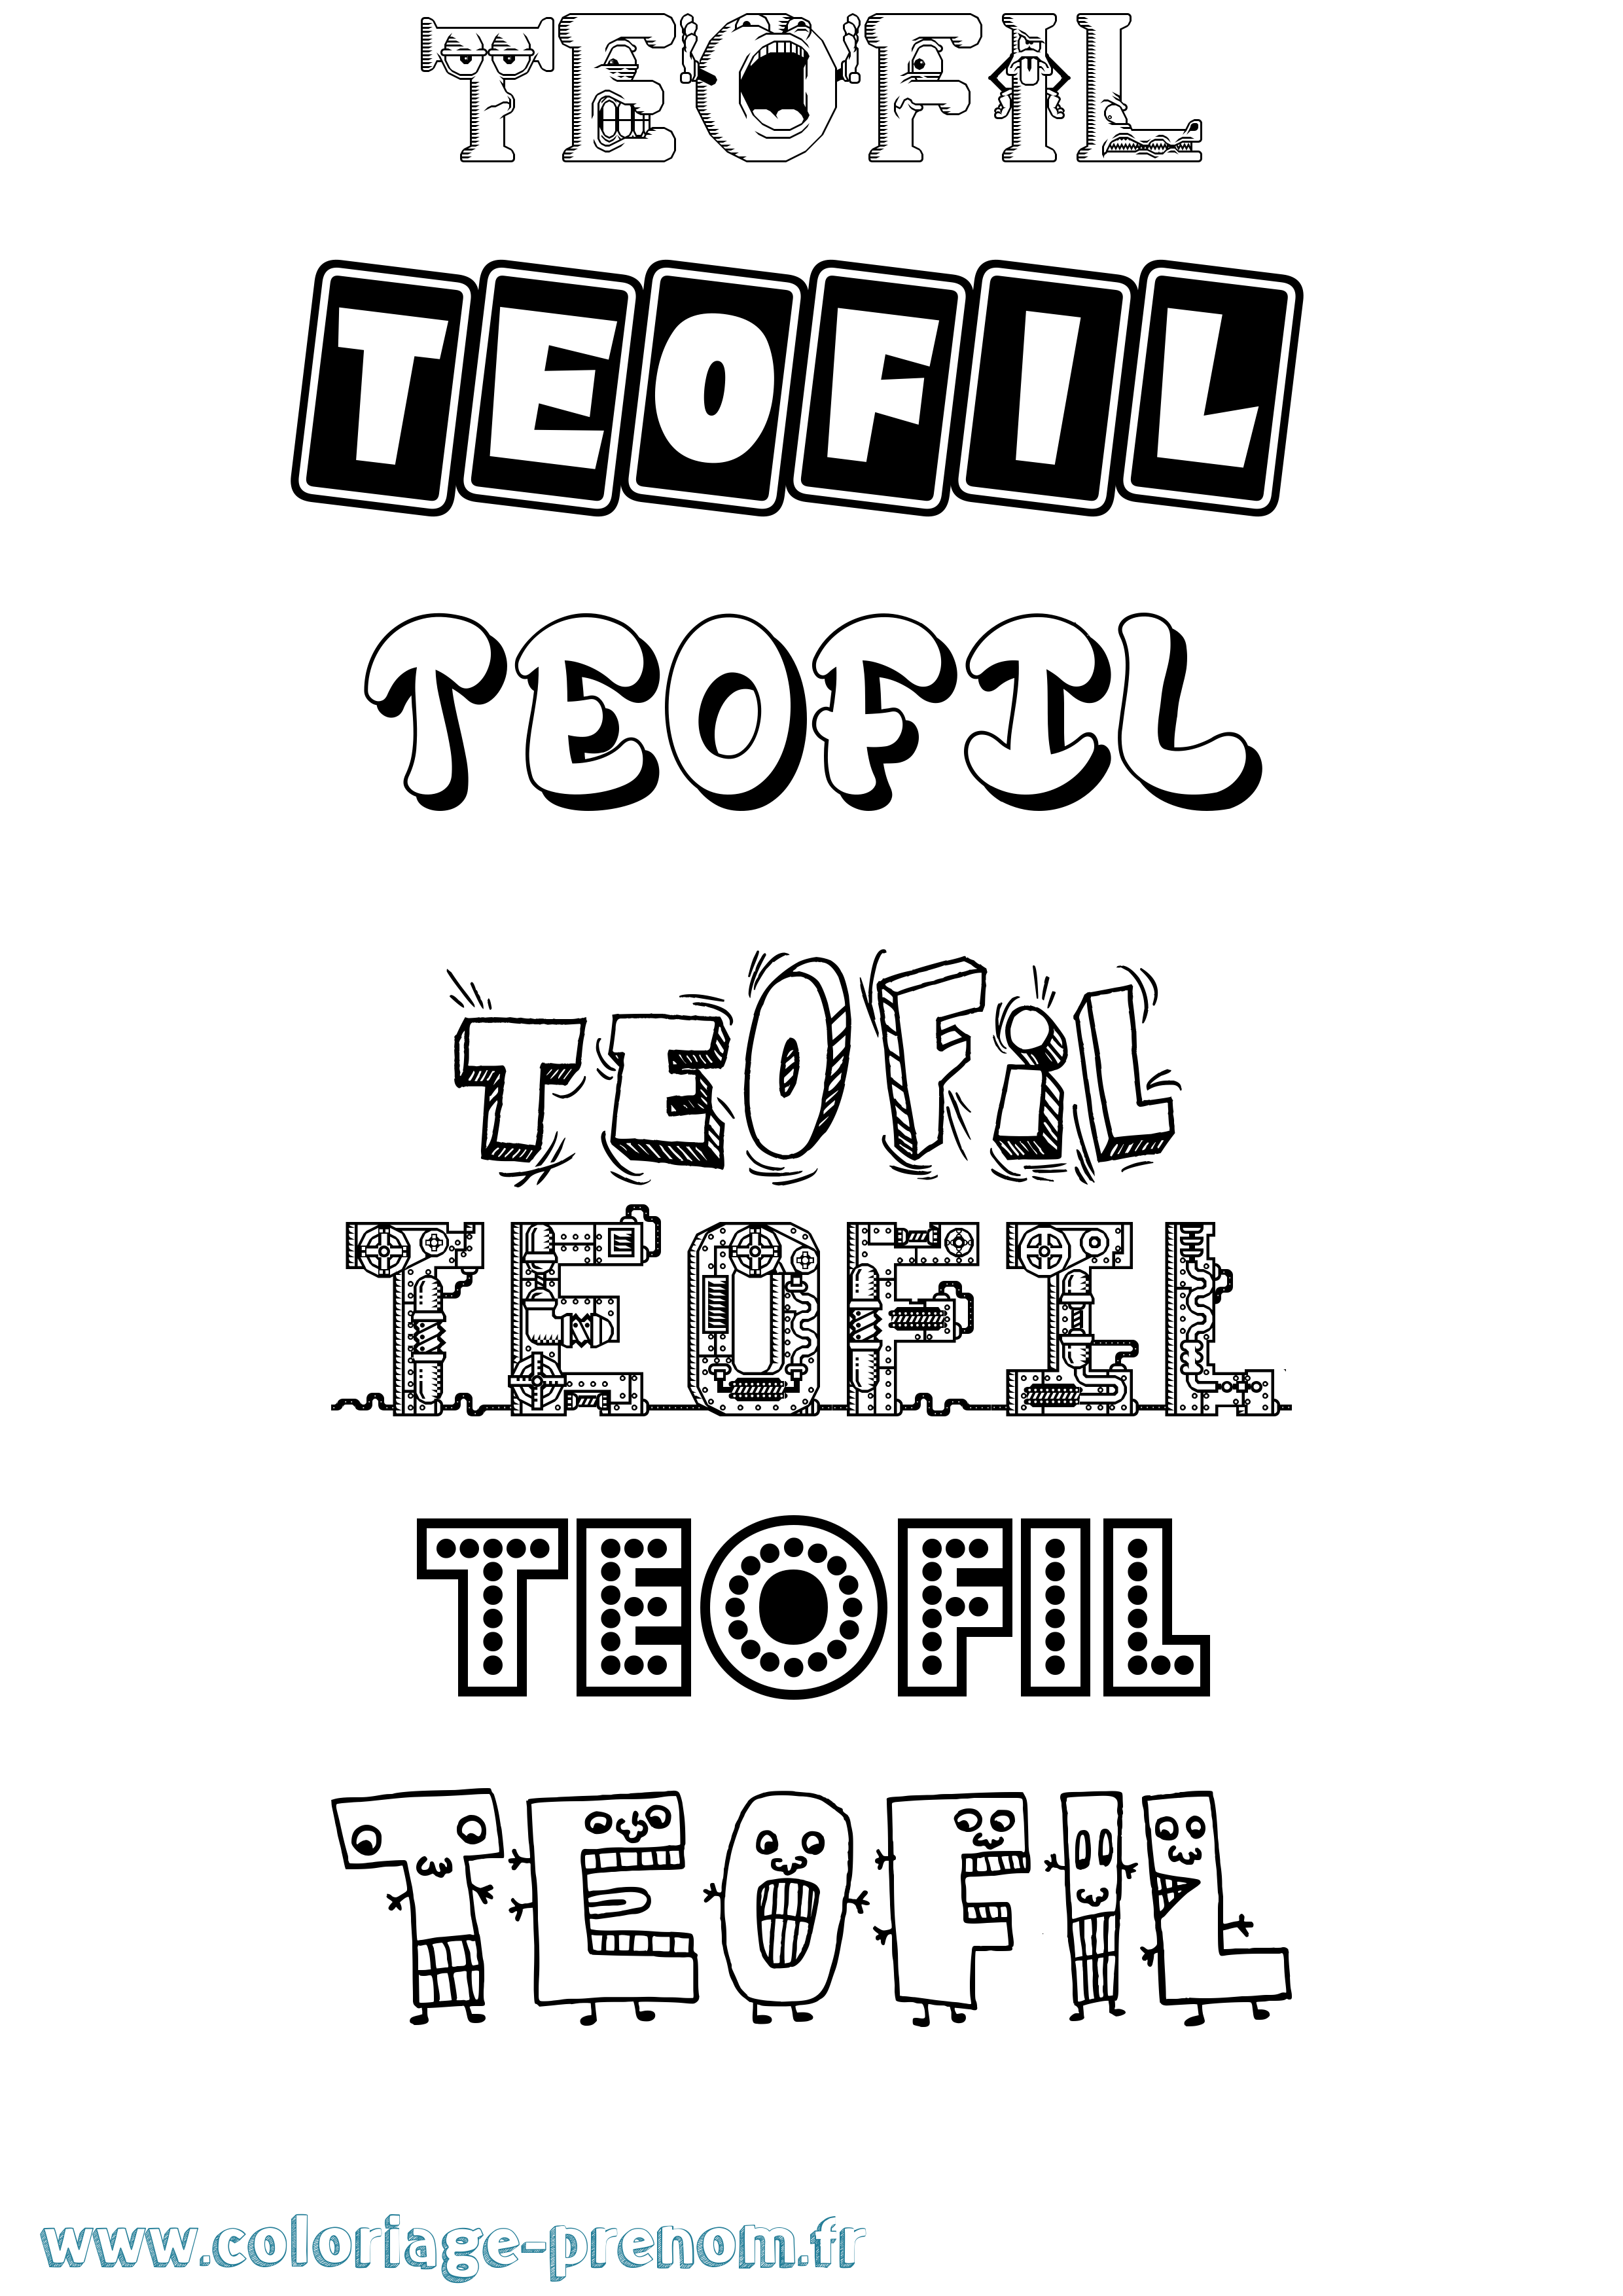 Coloriage prénom Teofil Fun